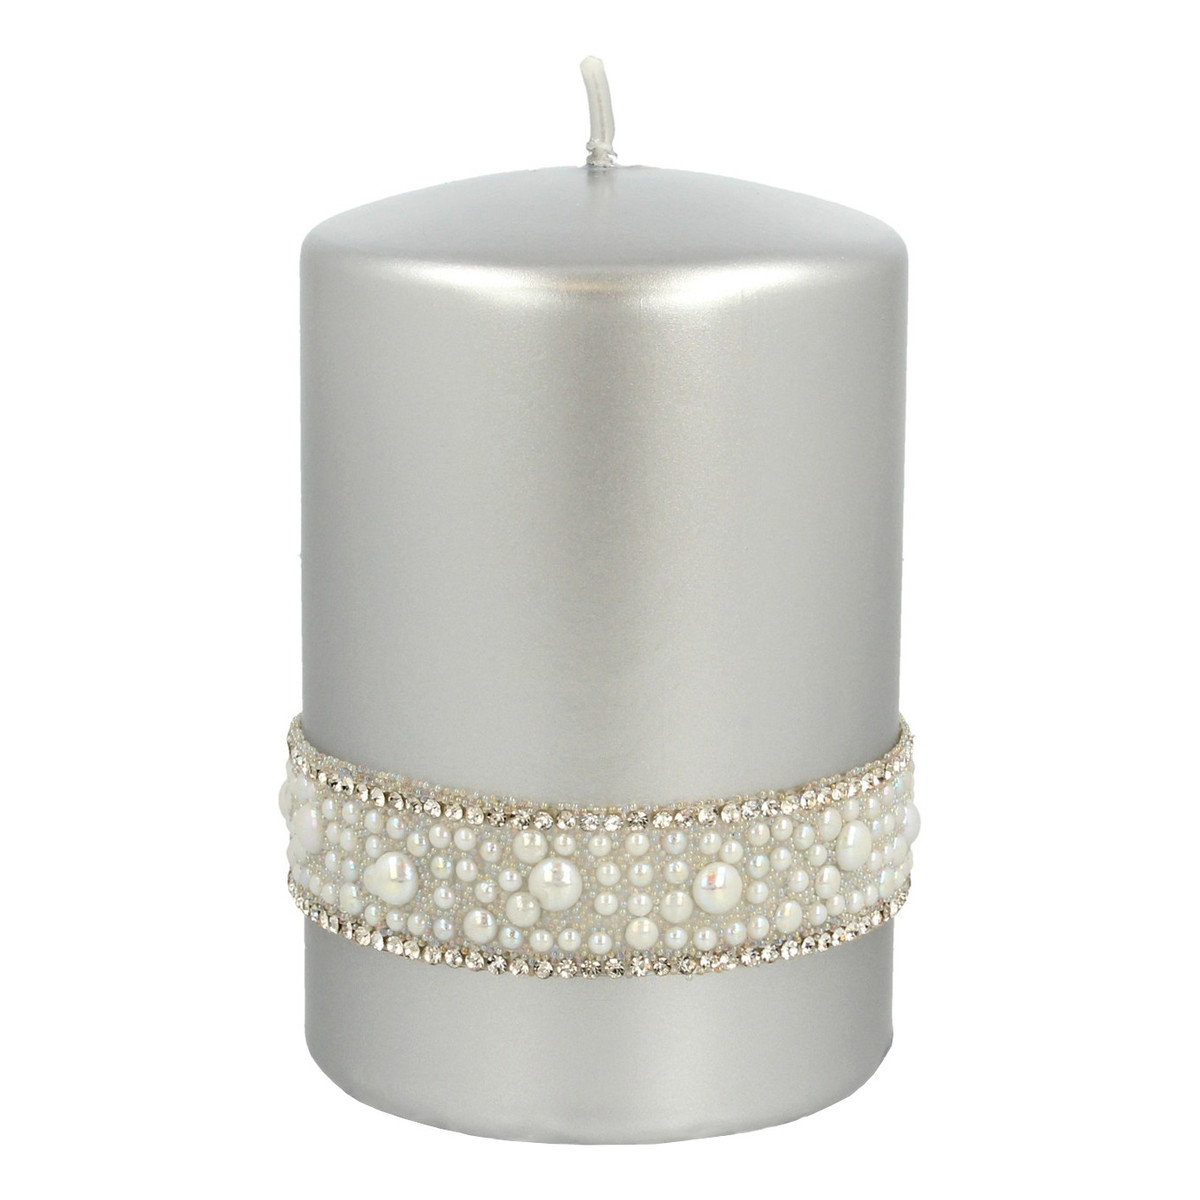 Artman Candles Crystal Opal Pearl Świeca ozdobna walec mały srebrny 1szt